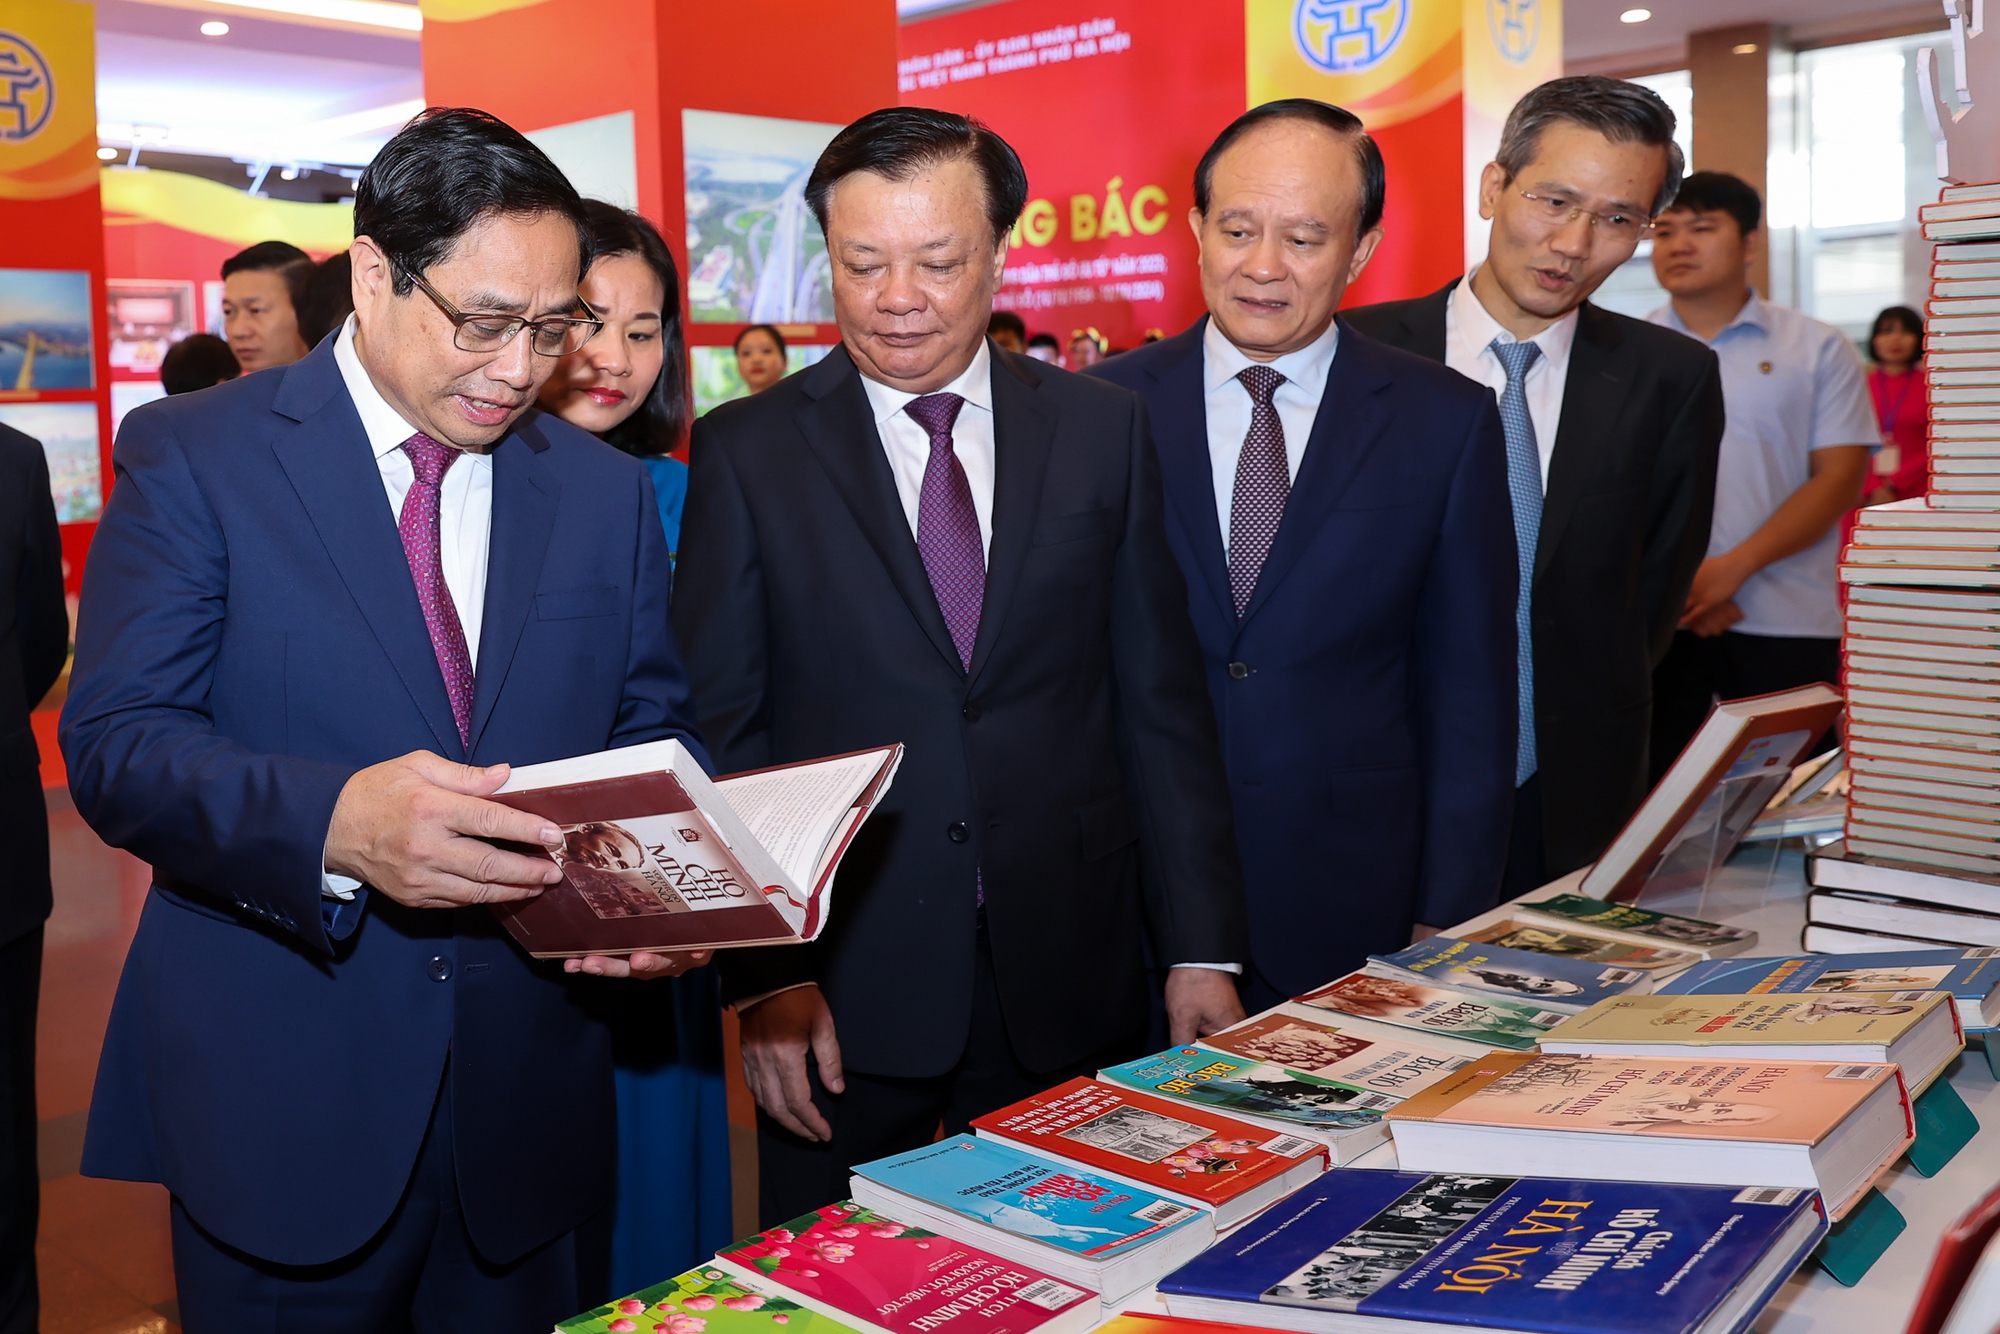 Thủ tướng và các đại biểu thăm triển lãm sách, ảnh "Hà Nội Ngàn hoa dâng Bác" - Ảnh: VGP/Nhật Bắc